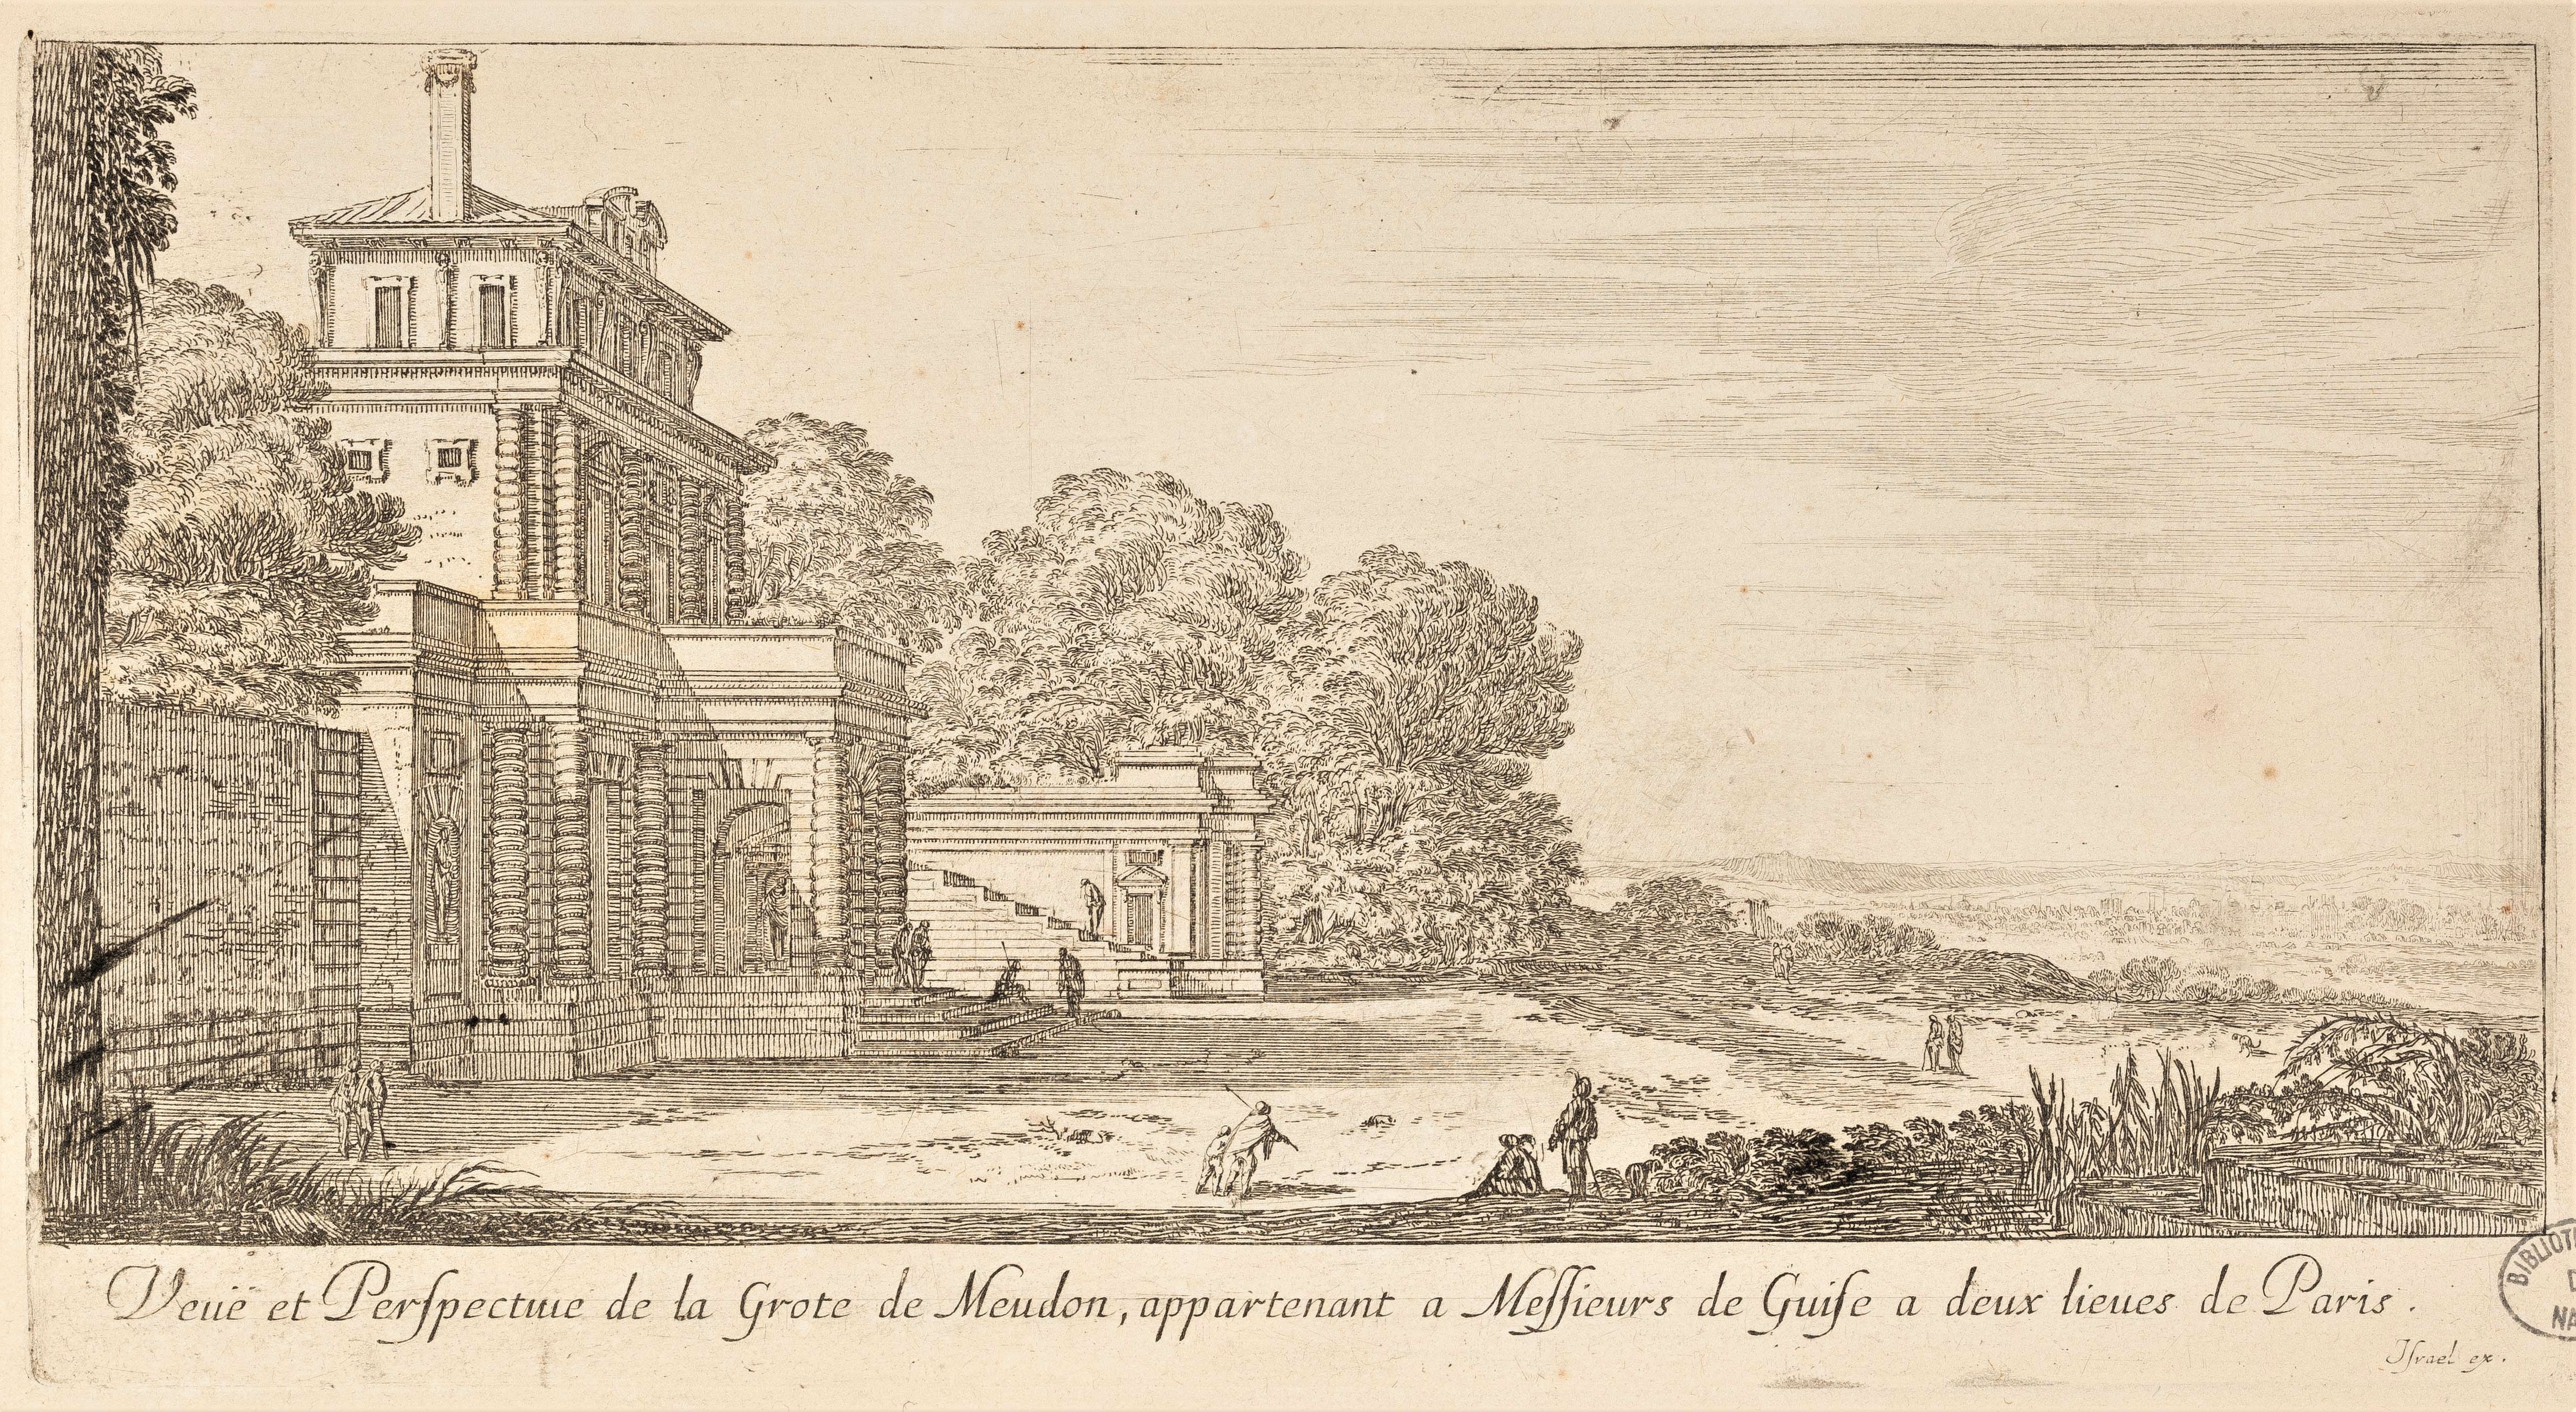 Israël Silvestre : Veuë et Perspective de la Grote de Meudon, appartenant a Messieurs de Guise a deux lieues de Paris.